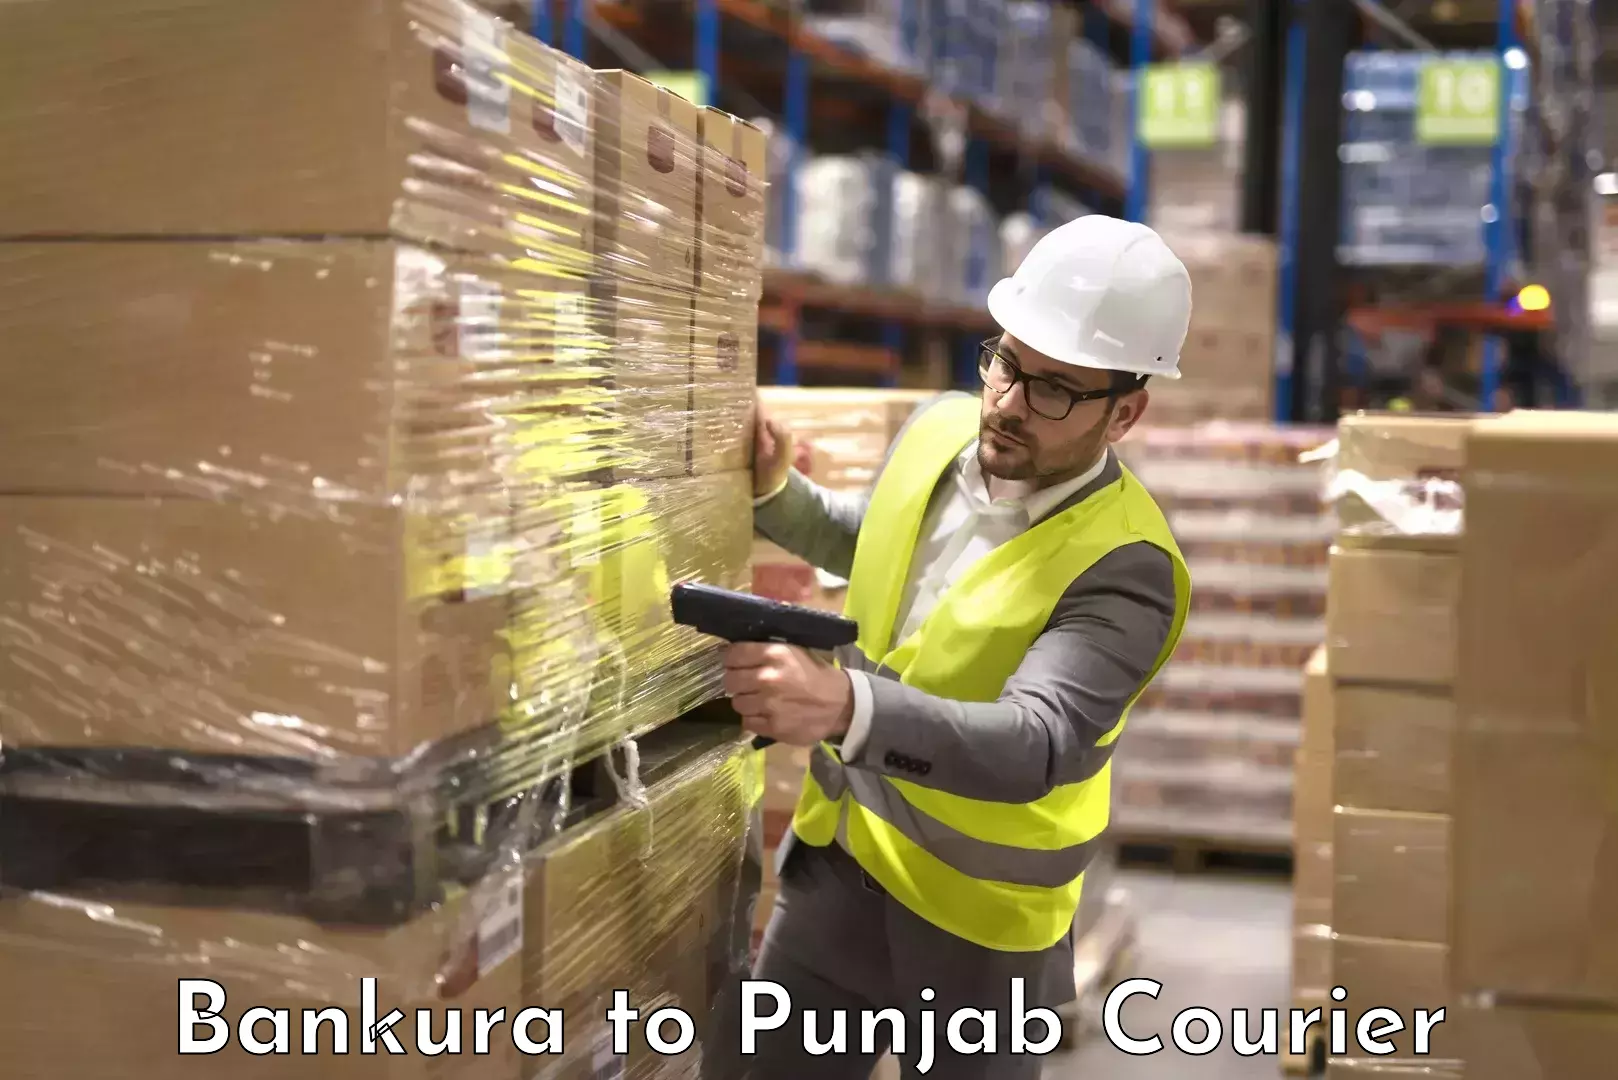 Baggage shipping experts Bankura to Kotkapura